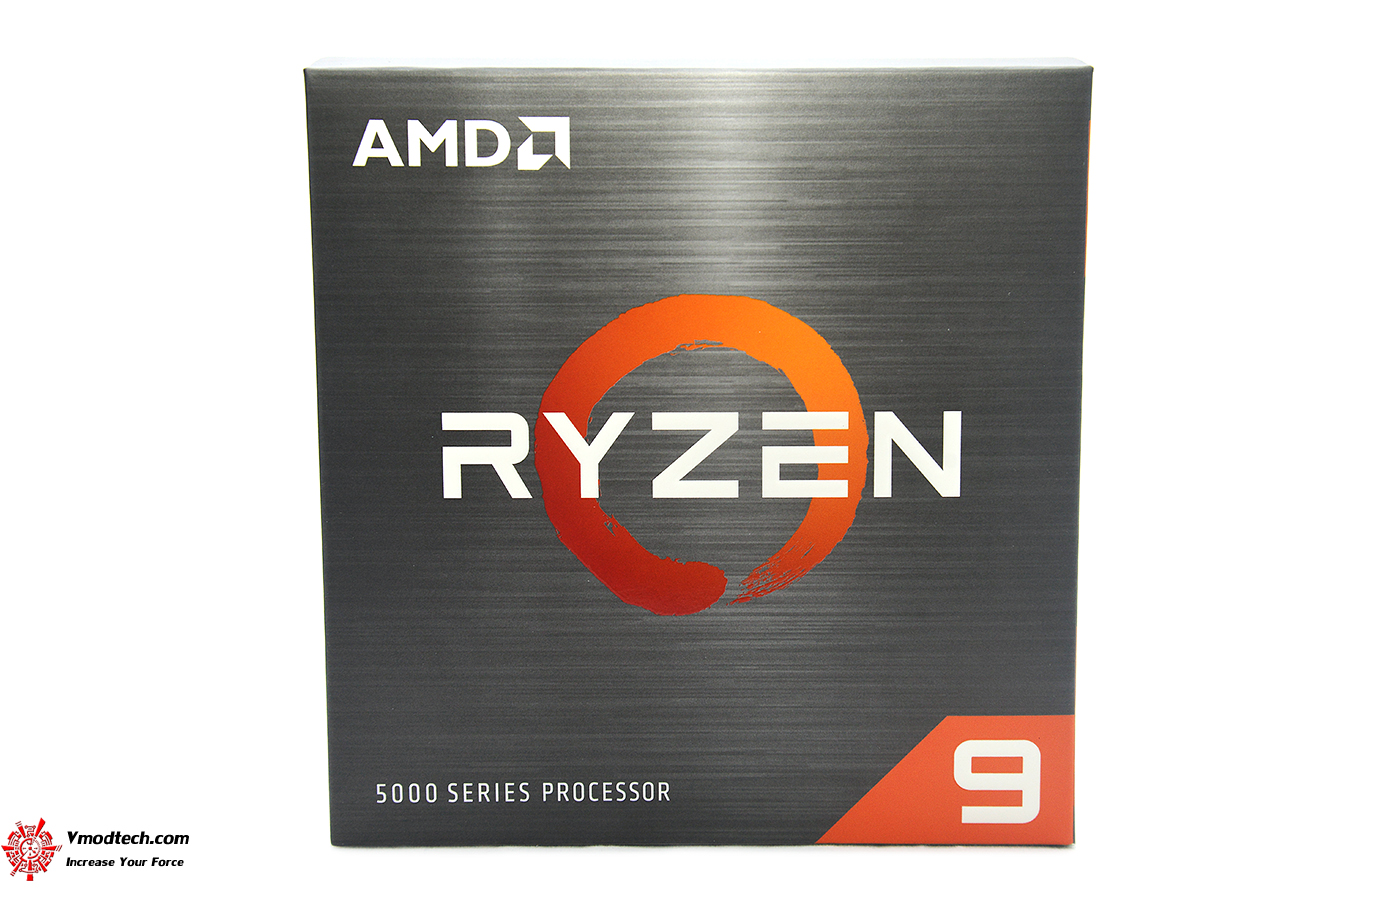 dsc 6523 AMD RYZEN 9 5900X PROCESSOR REVIEW